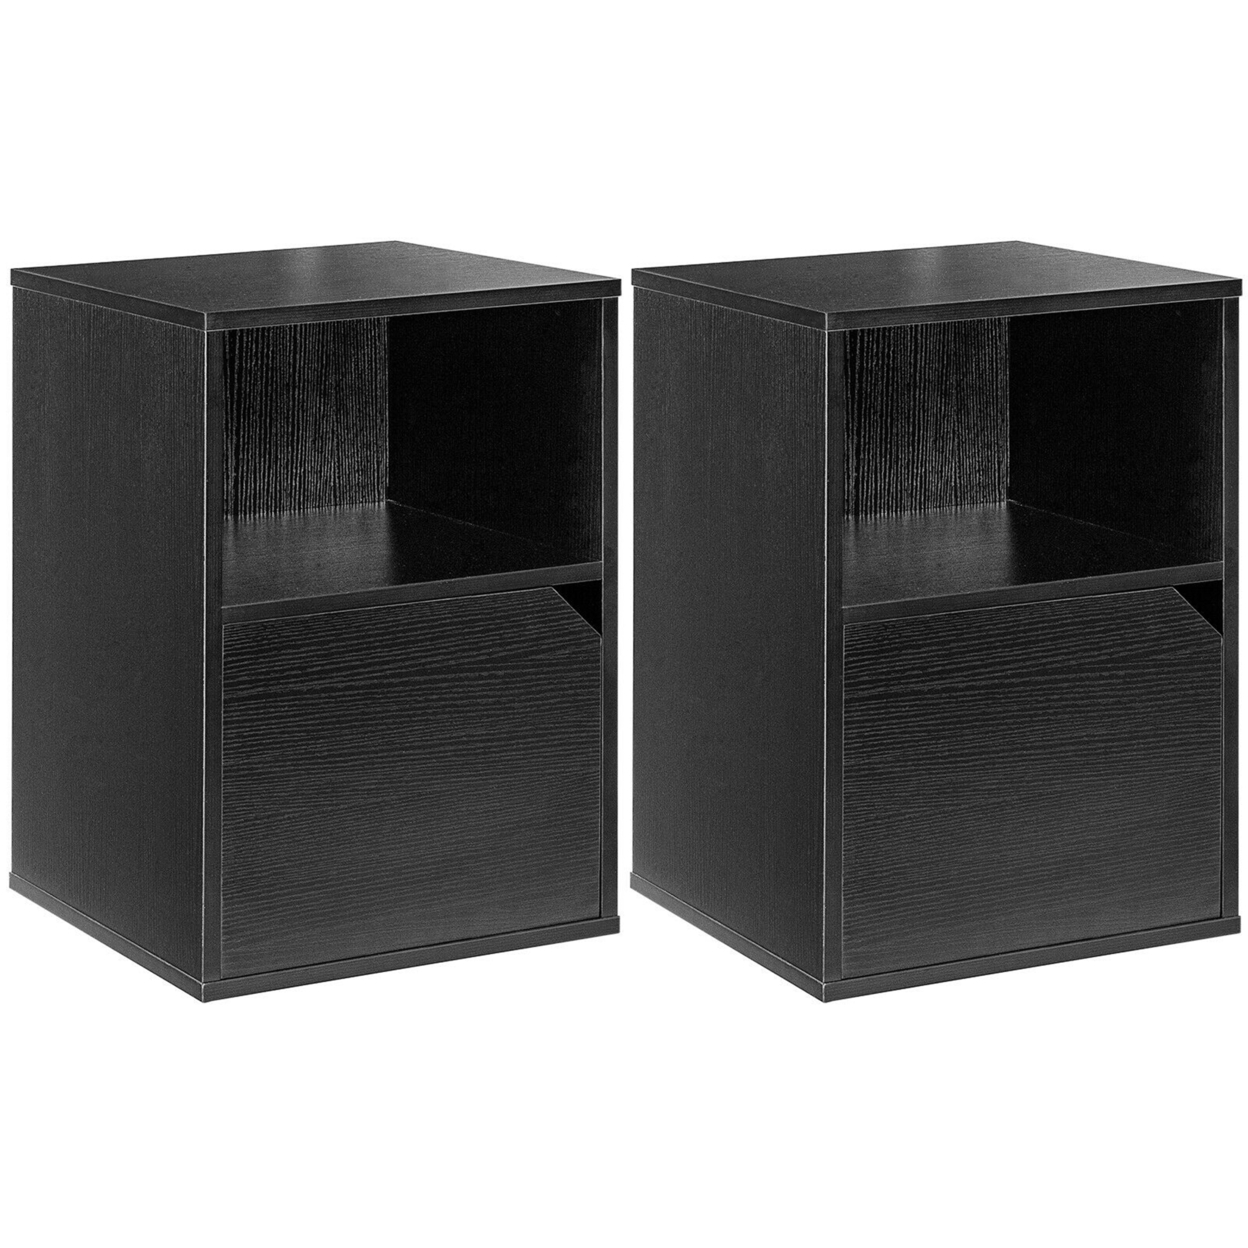 Set Of 2 Nightstands Side End Table Storage Cabinet Shelf Living Room - Black